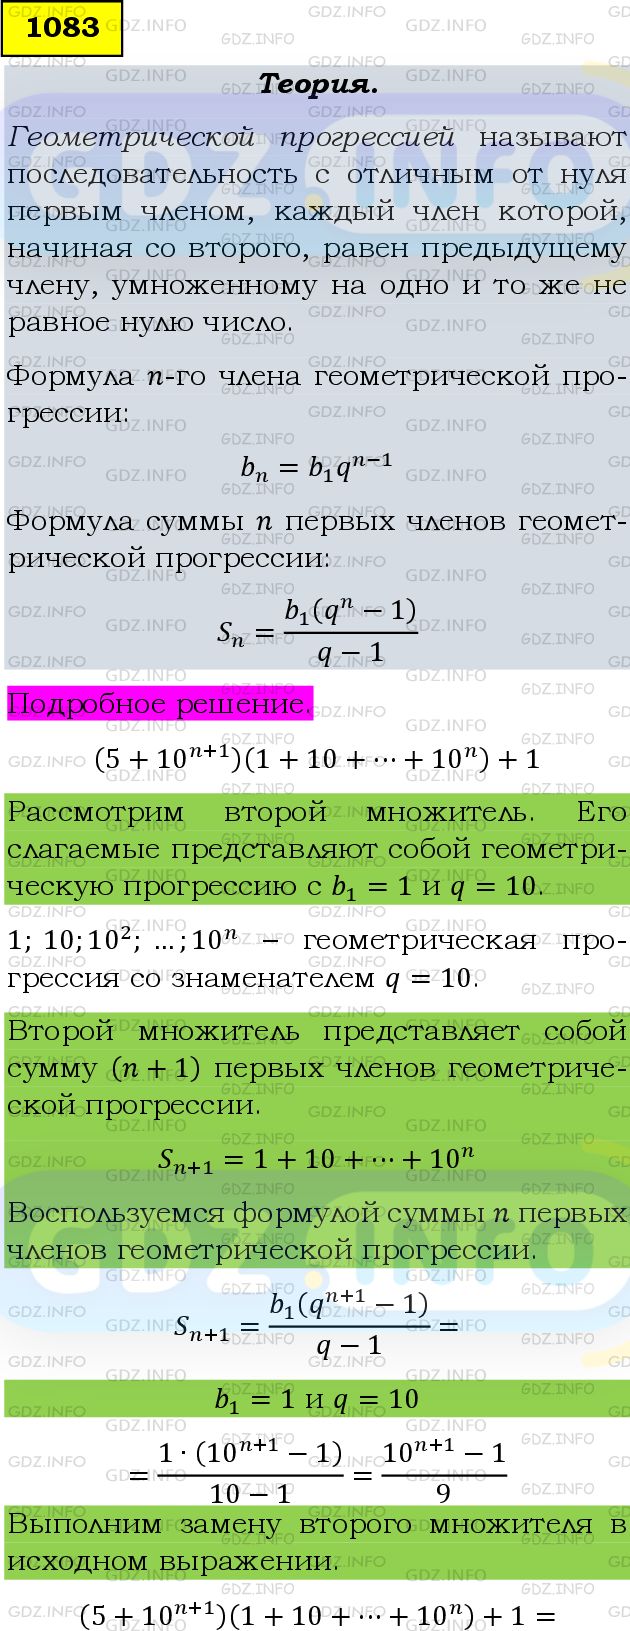 Фото подробного решения: Номер задания №1083 из ГДЗ по Алгебре 9 класс: Макарычев Ю.Н.